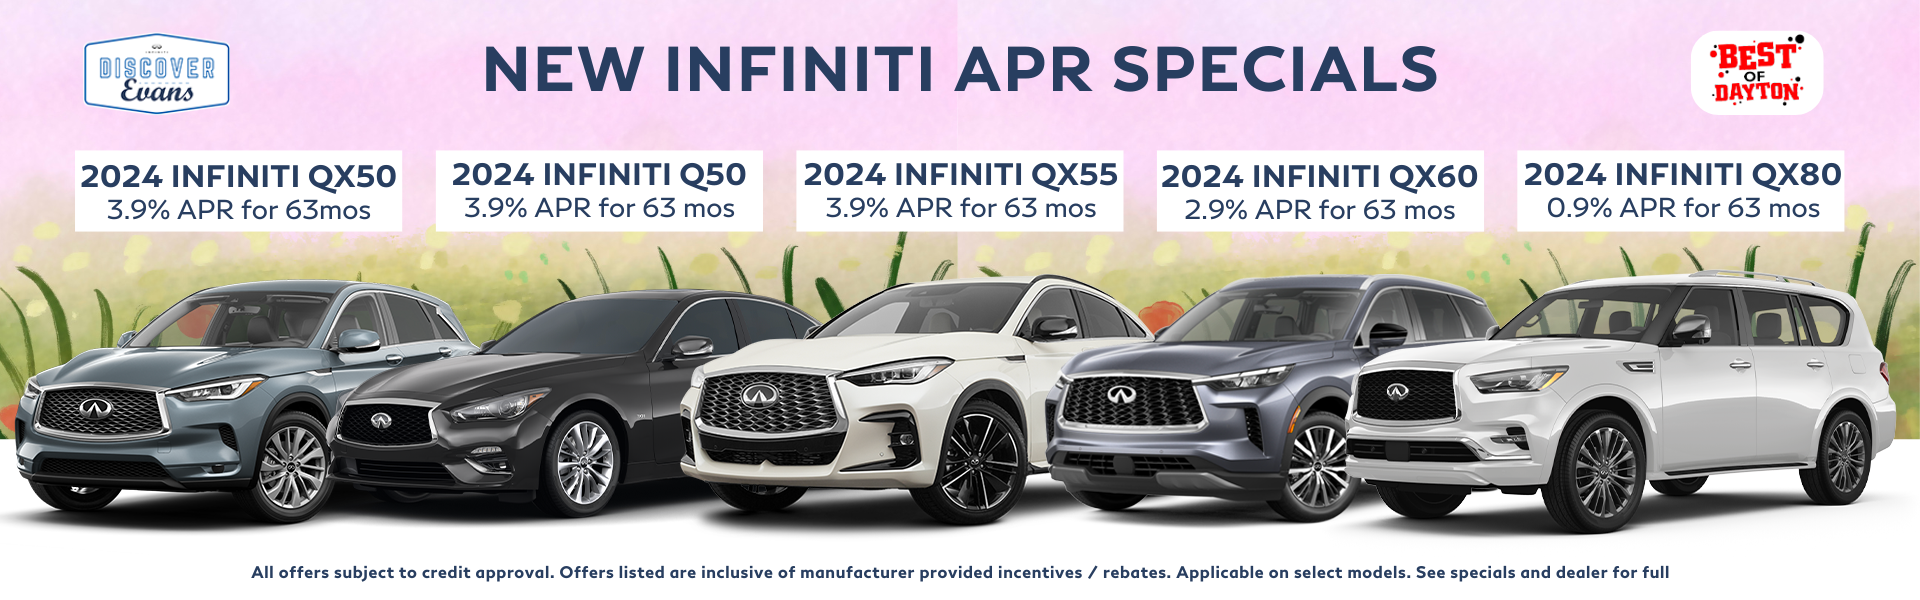 INFINITI New Car APR Specials